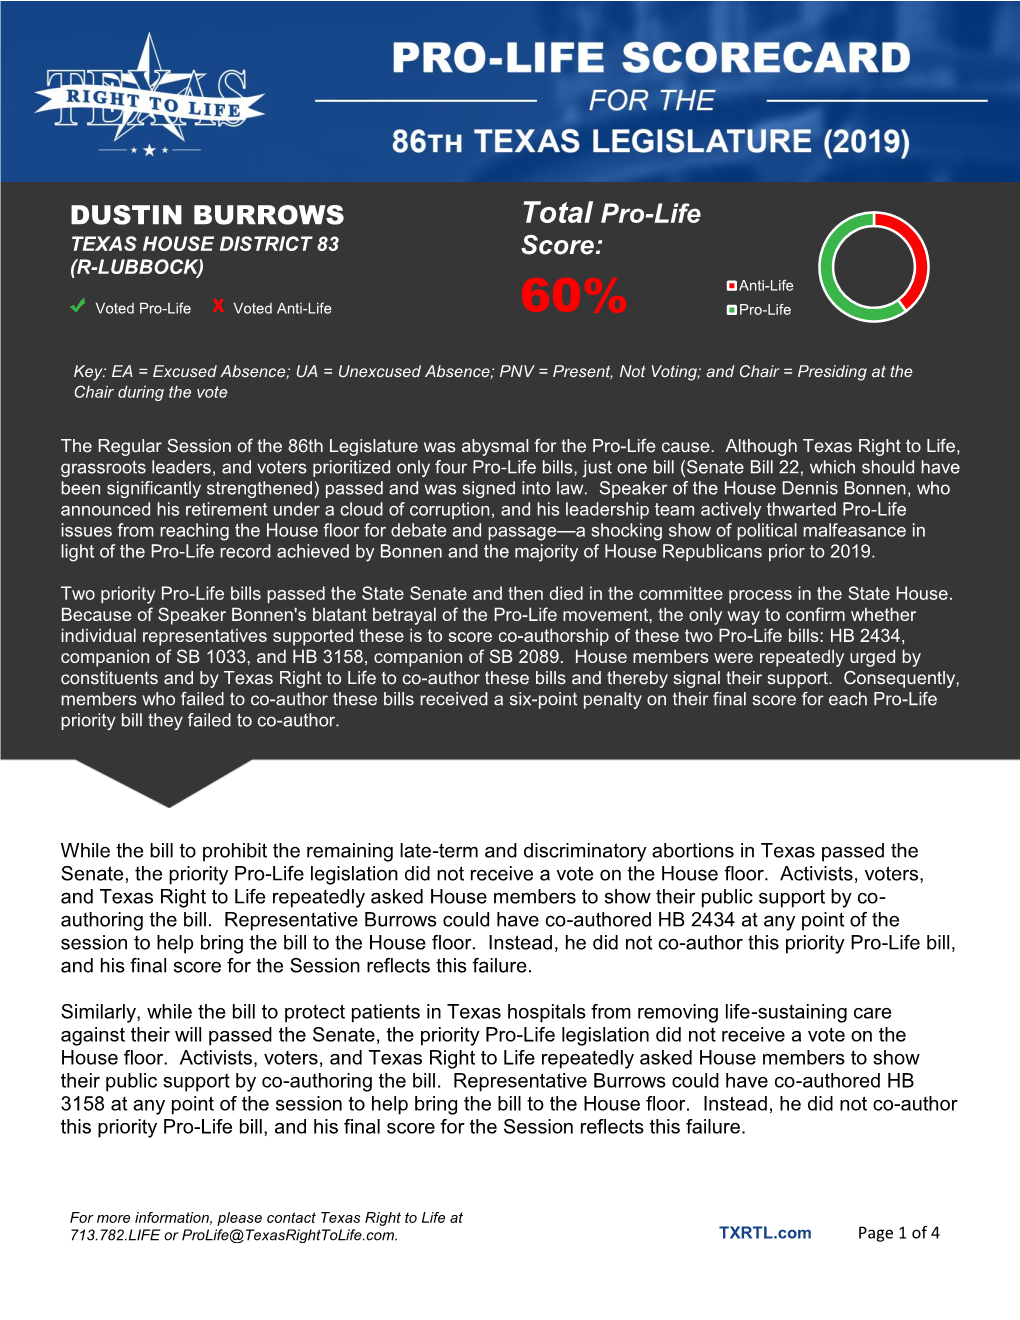 DUSTIN BURROWS Total Pro-Life Score